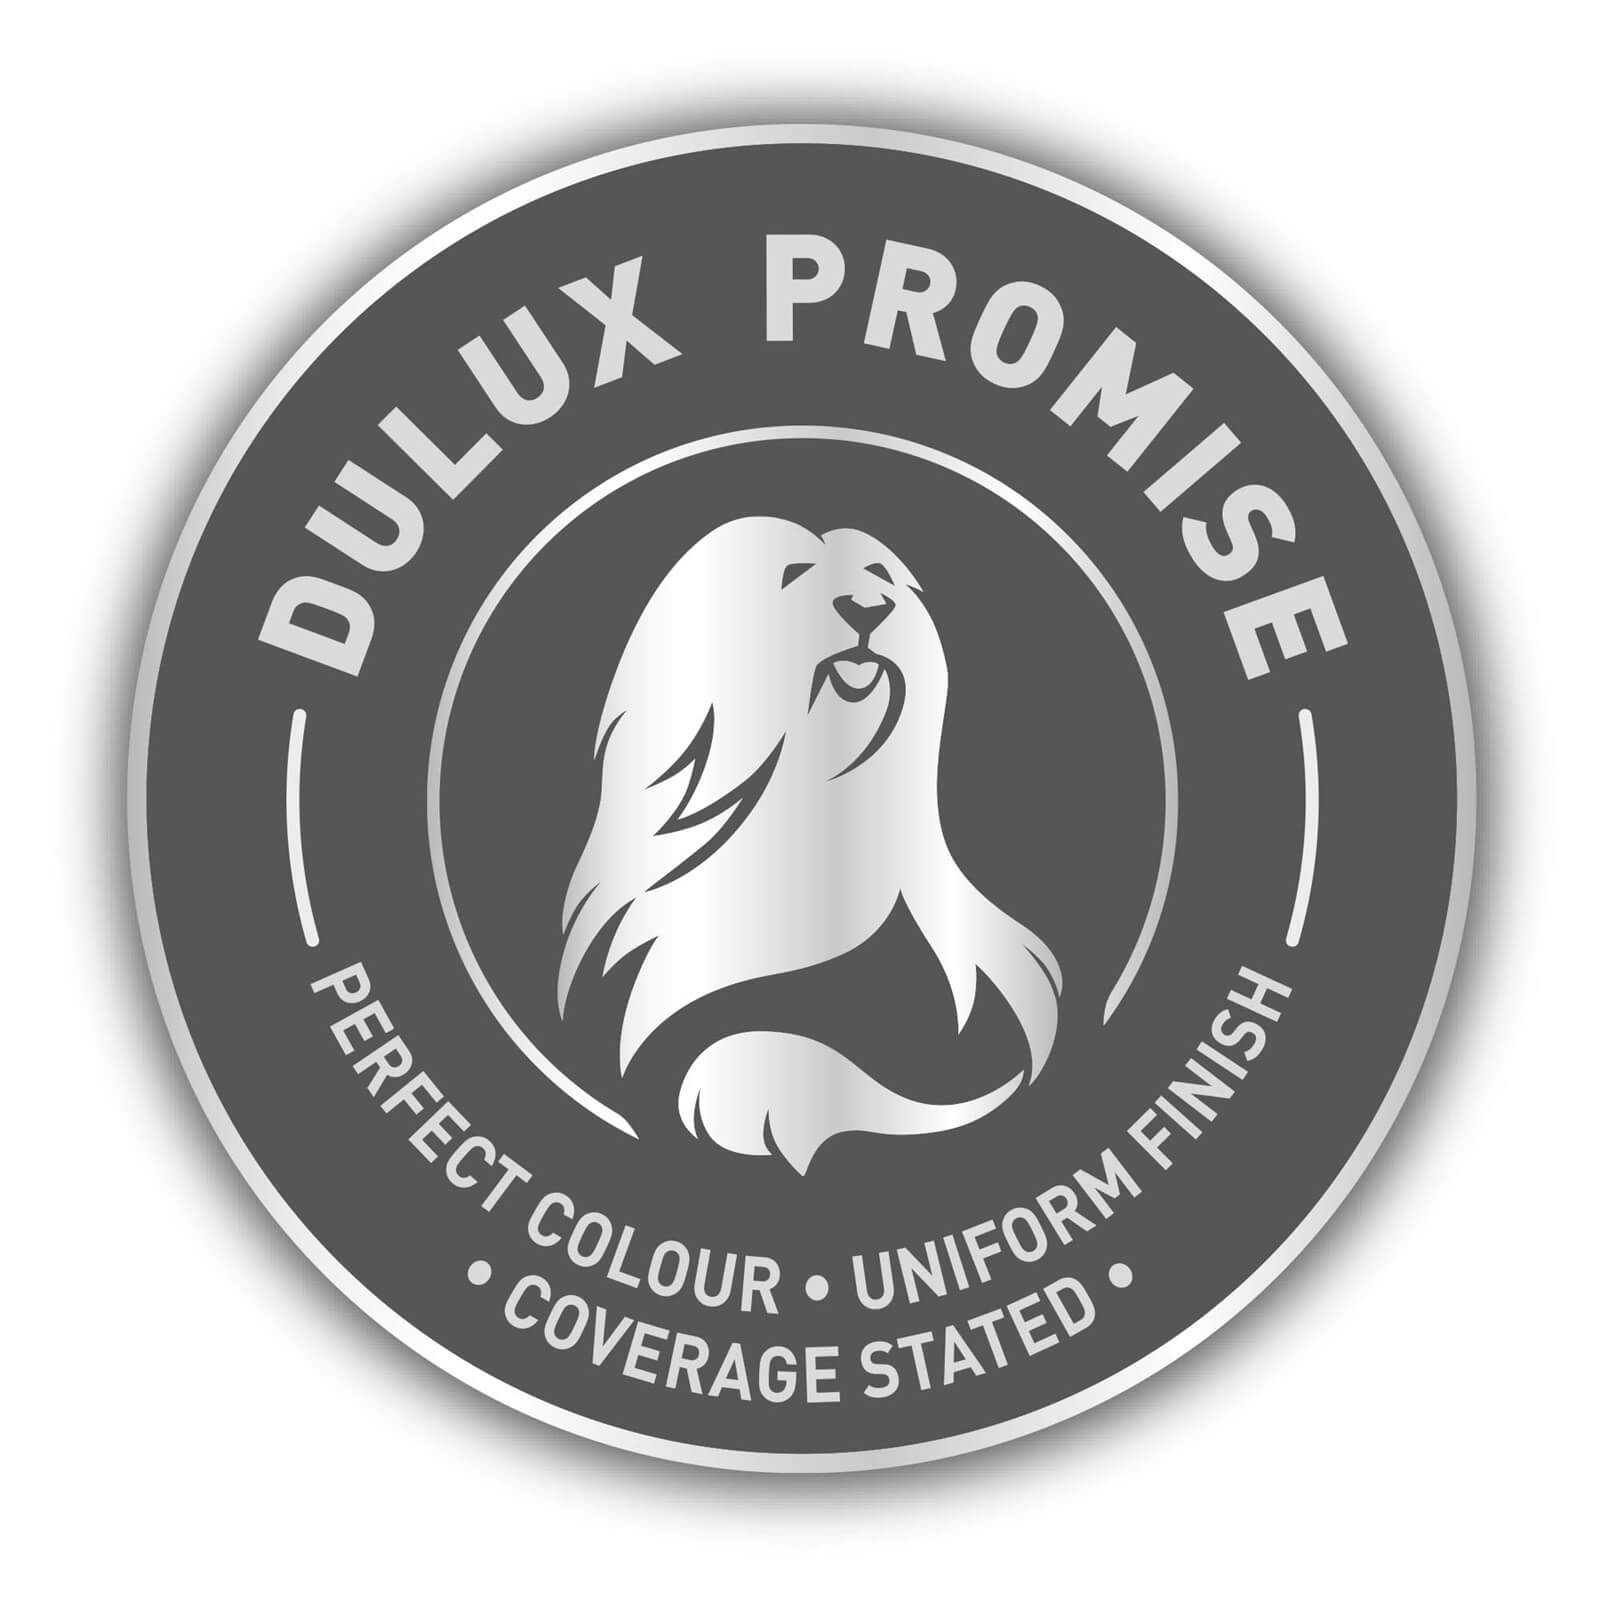 Dulux Silk Emulsion Paint Rock Salt - 2.5L